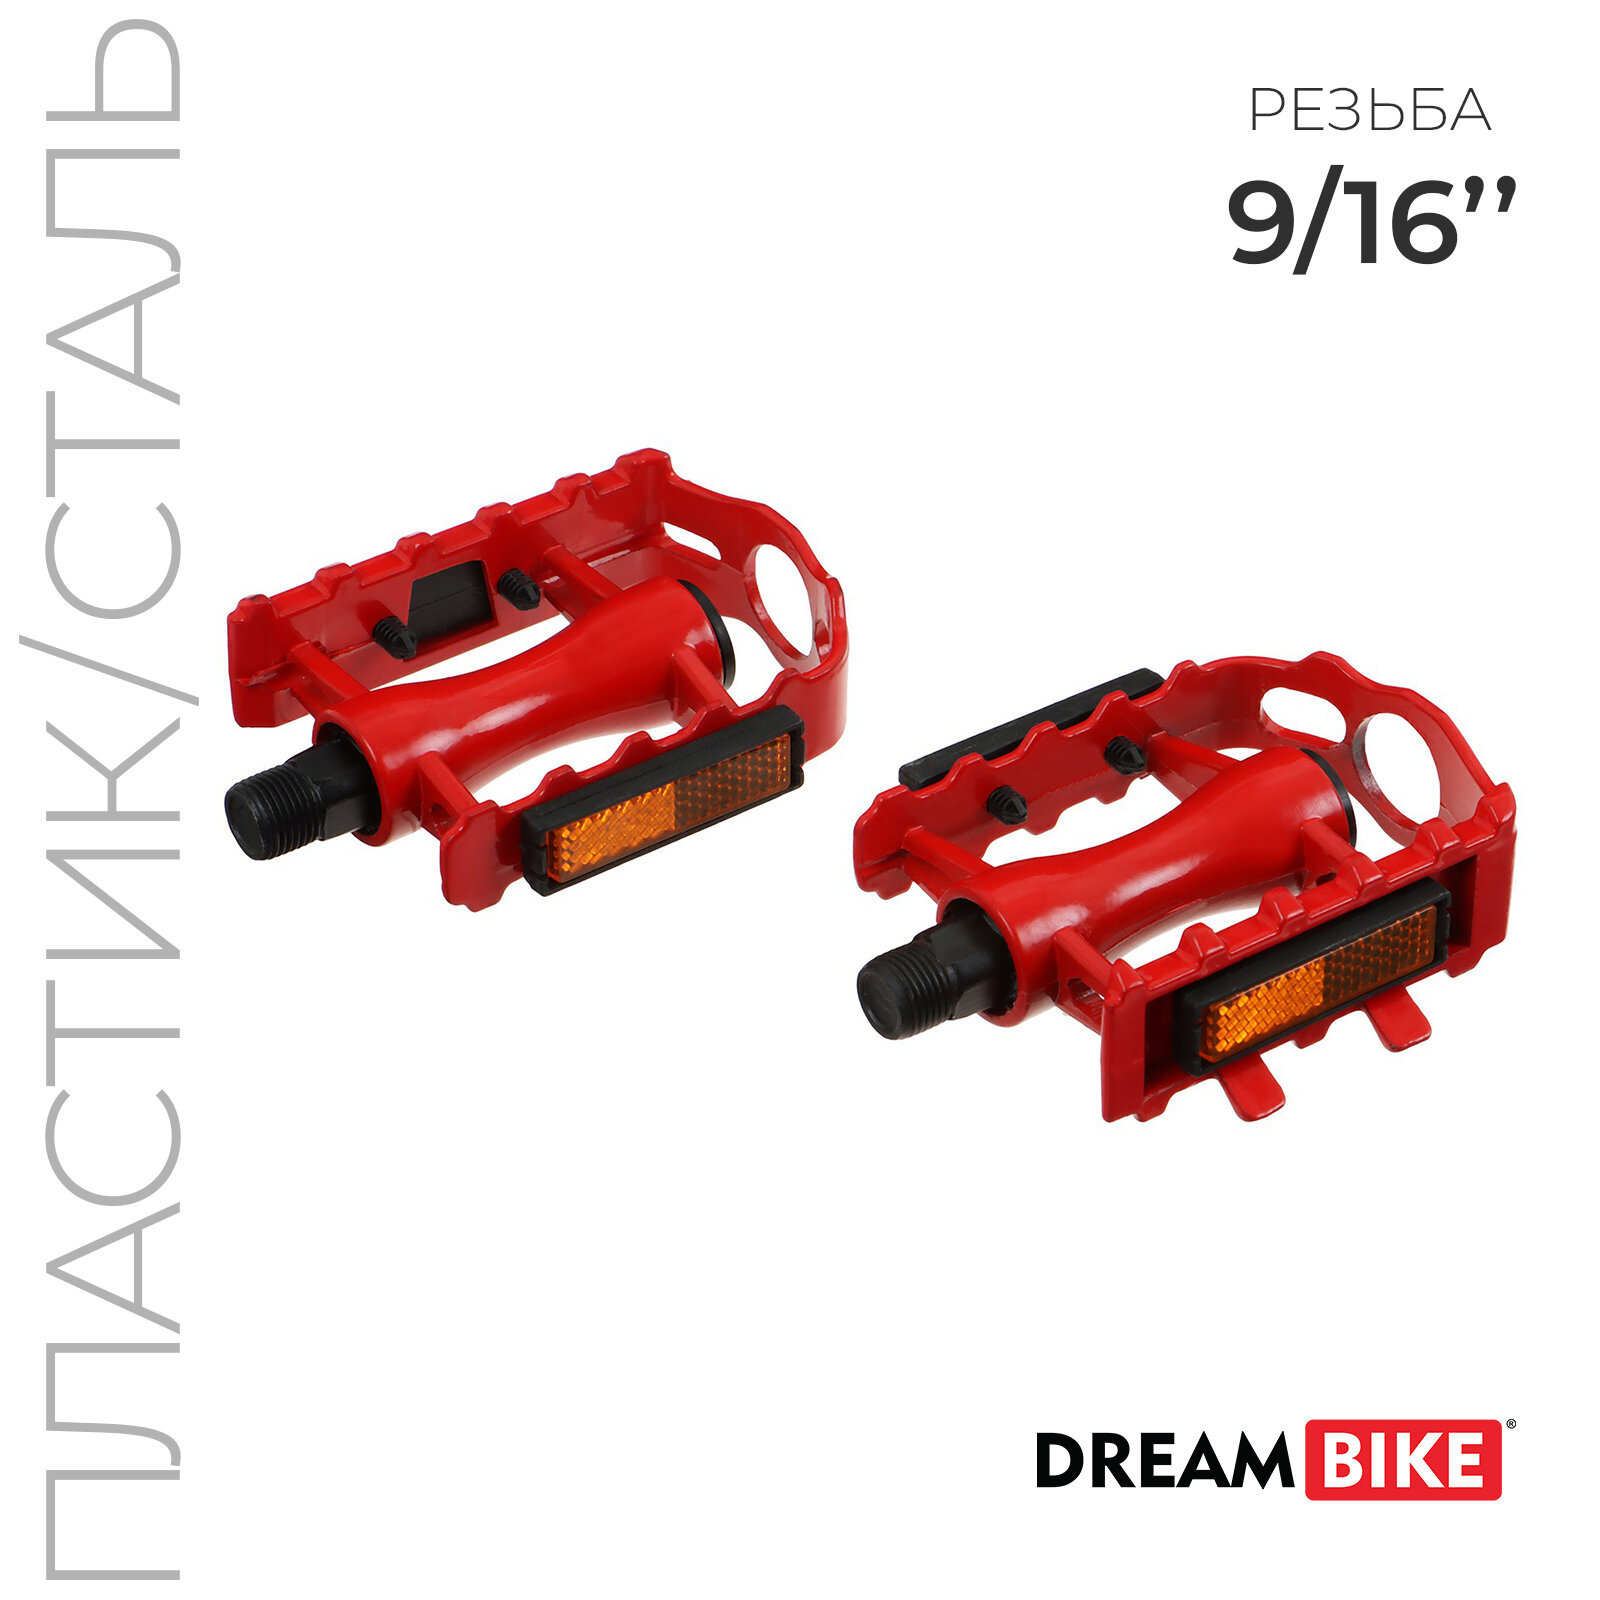 Педали 9/16" Dream Bike, с подшипниками, пластик/сталь, цвет красный (1шт.)